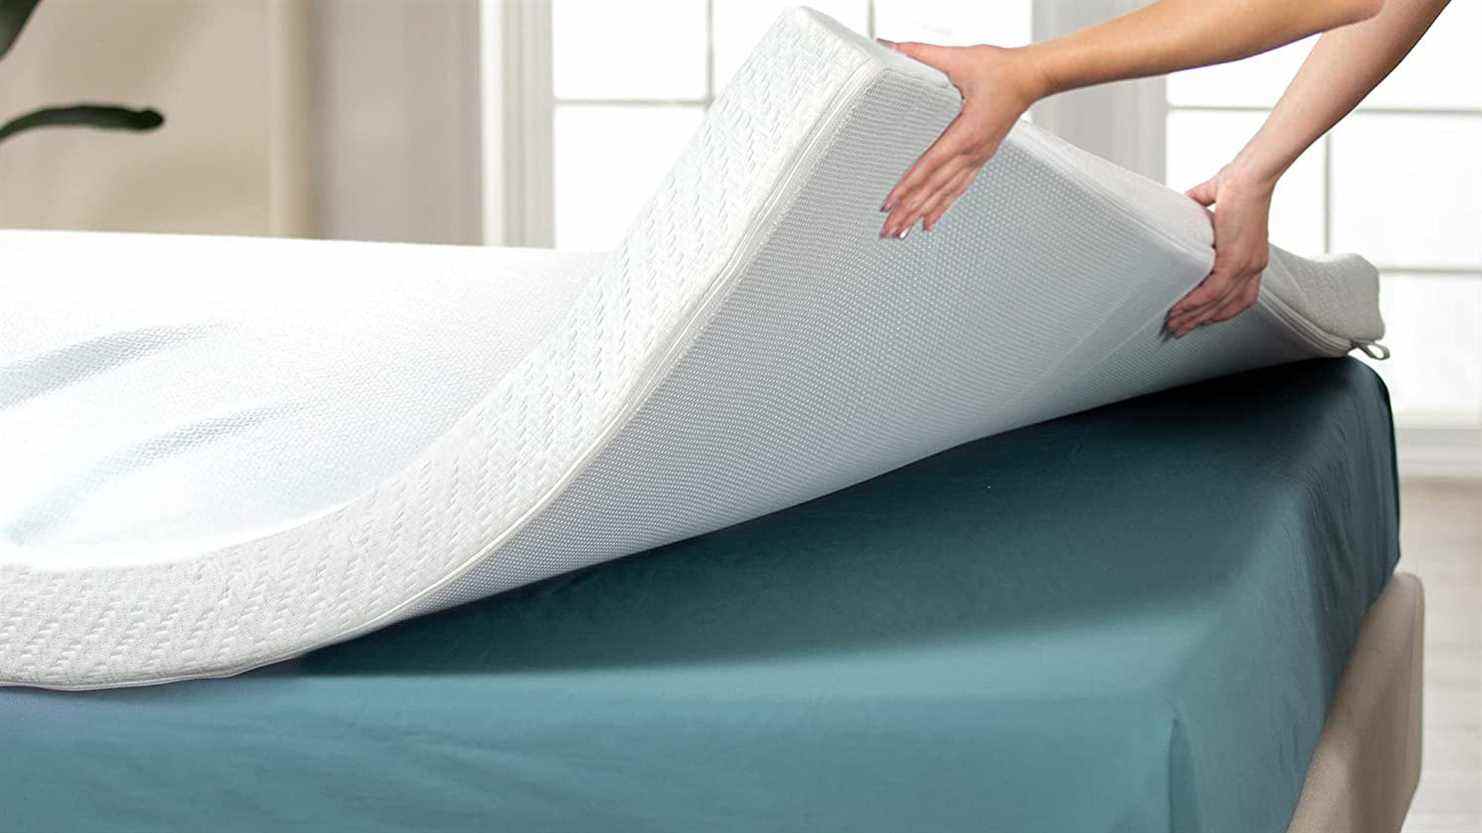 Une personne place un surmatelas blanc épais sur un matelas pour le rendre plus confortable pour dormir